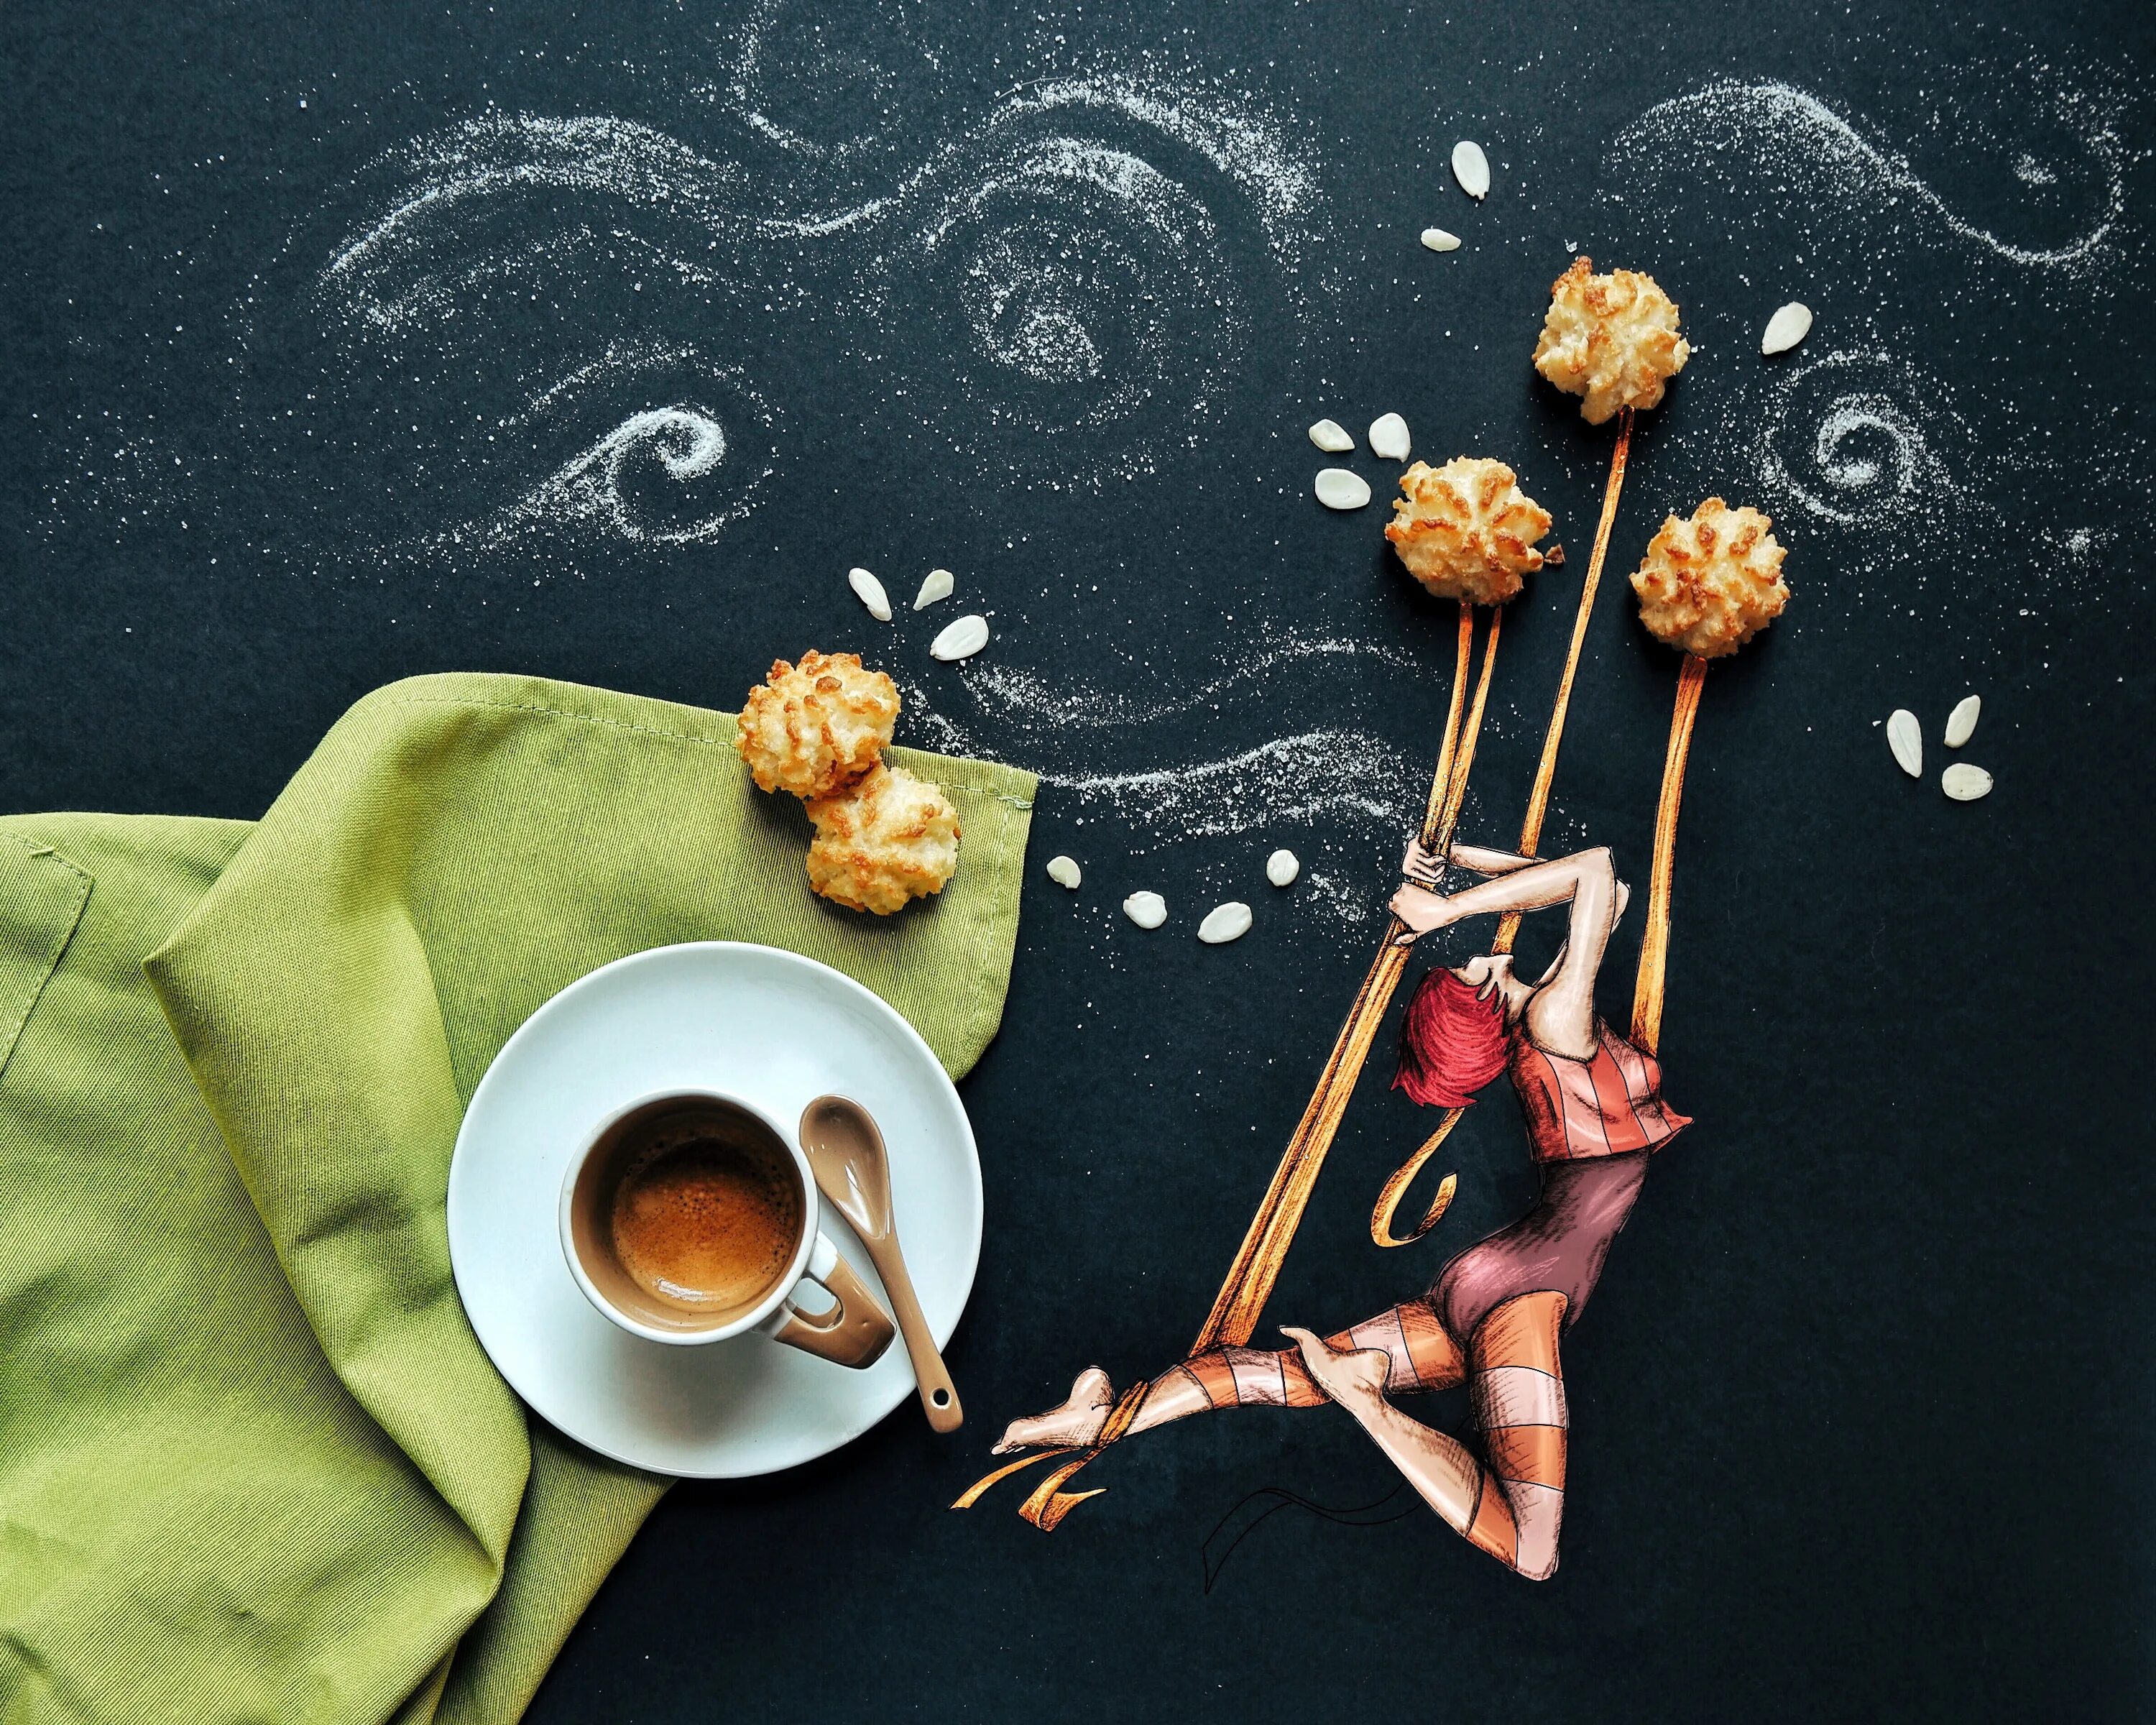 Итальянская художница Cinzia Bolognesi. Художница-иллюстратор из Италии Синция Болонези. Утреннее настроение. Утро кофе настроение.